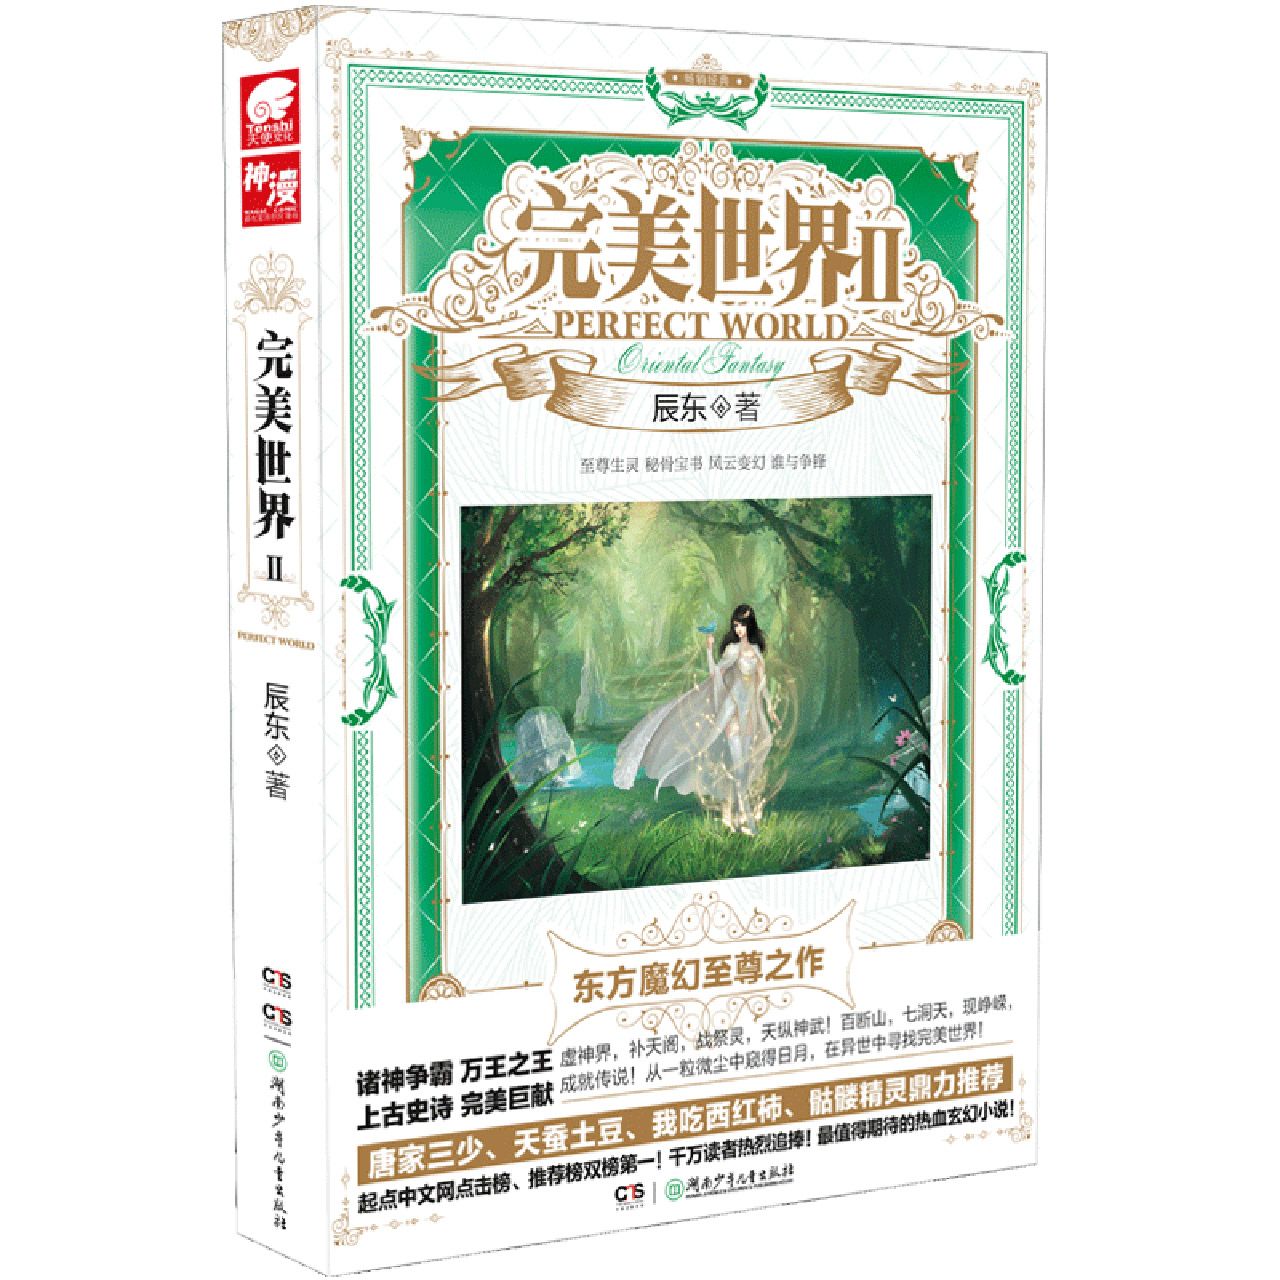 正版图书完美世界(Ⅱ)辰东湖南少年儿童出版社97875358265